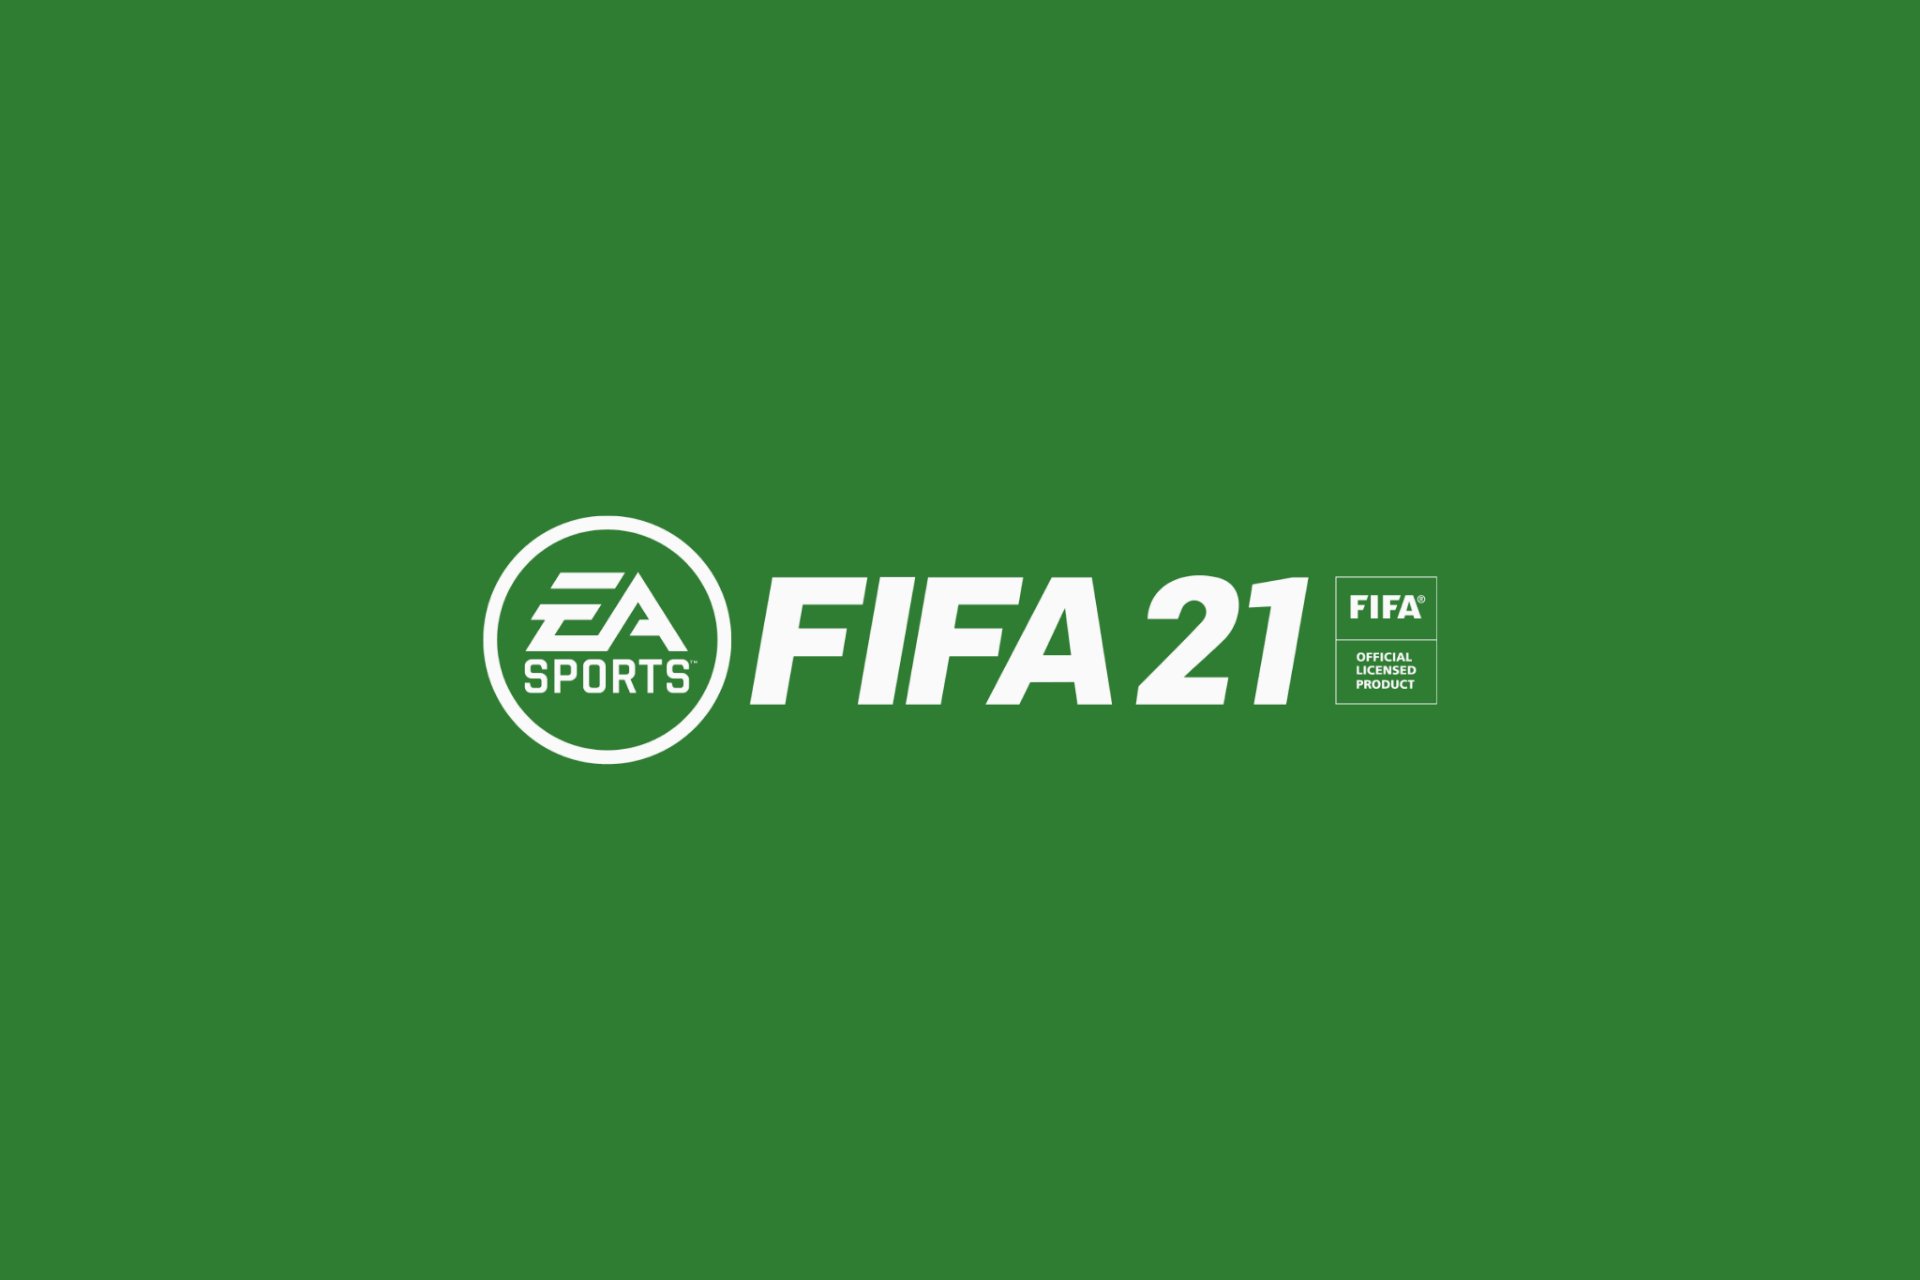 Dronken worden Aanvrager Benadering FIFA 21 PC Controller Not Working: How to Fix It Easily